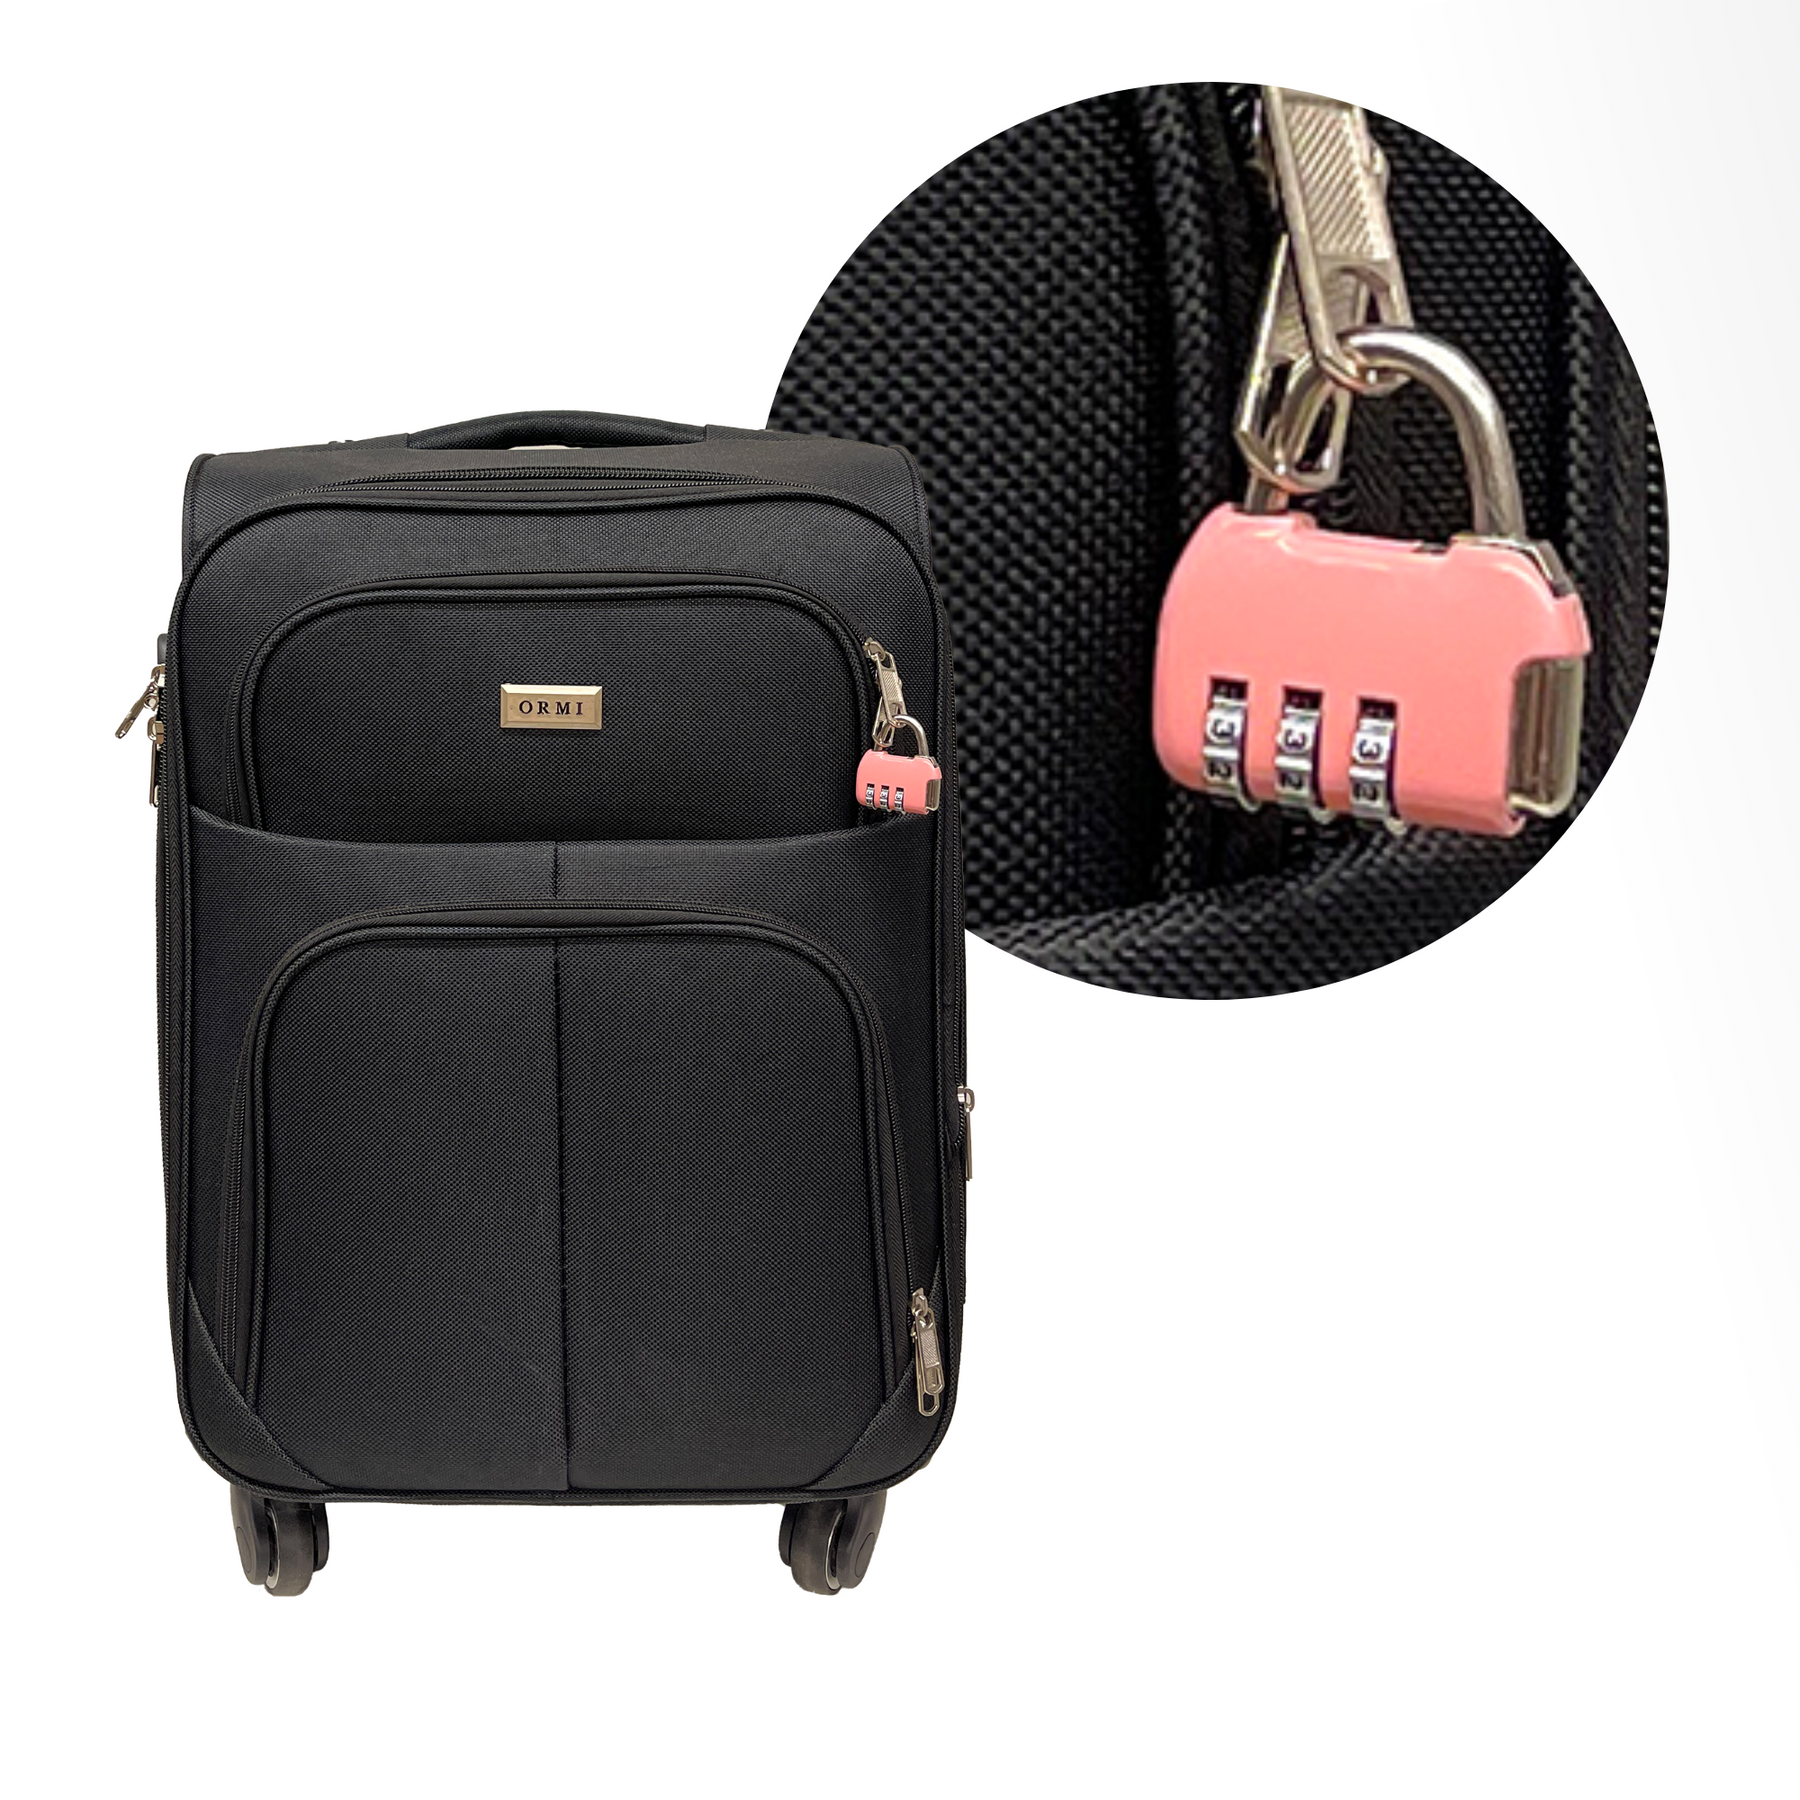 Kombinationslås med 3 siffror för resväska, bagage, reseväska och ryggsäckar